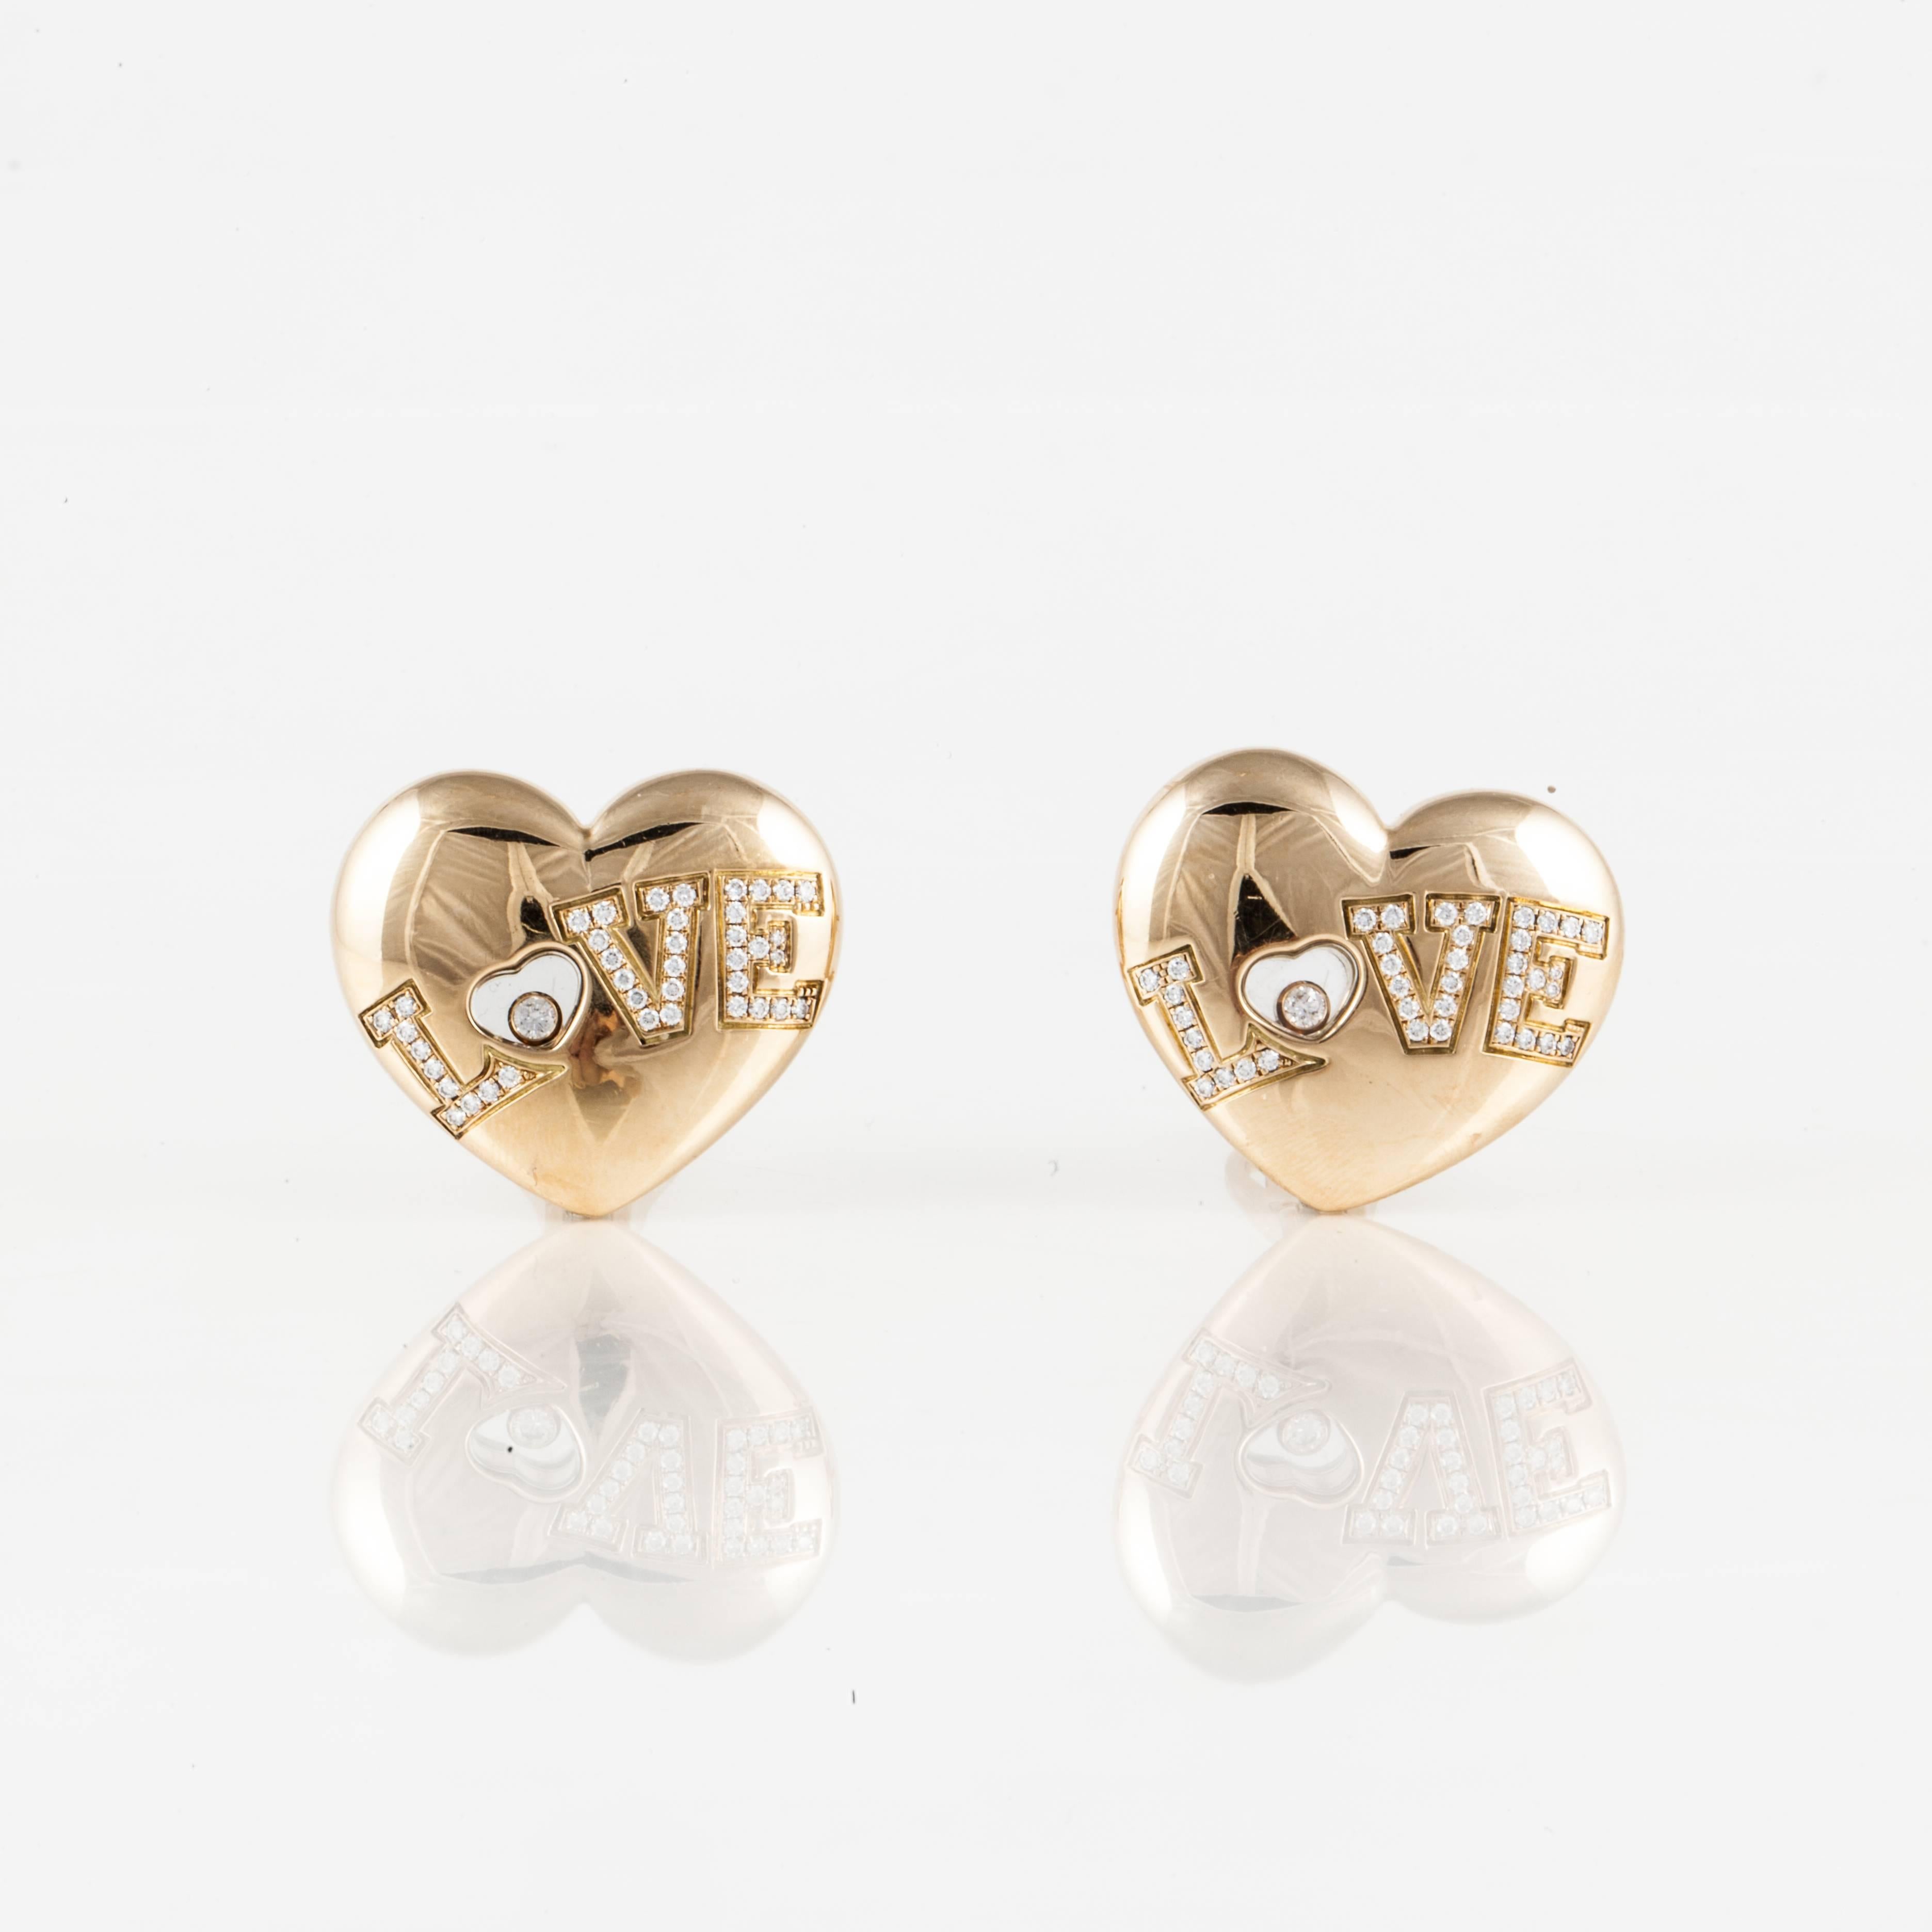 Paar Happy Diamonds Love-Ohrringe von Chopard.  Sie sind nummeriert:  84/2899-20 9853409.  Herzförmig mit dem Schriftzug LOVE in runden Diamanten.  Es gibt 80 runde Diamanten von insgesamt 0,90 Karat, Farbe G-H und Reinheit VVS-VS.  Die Ohrringe